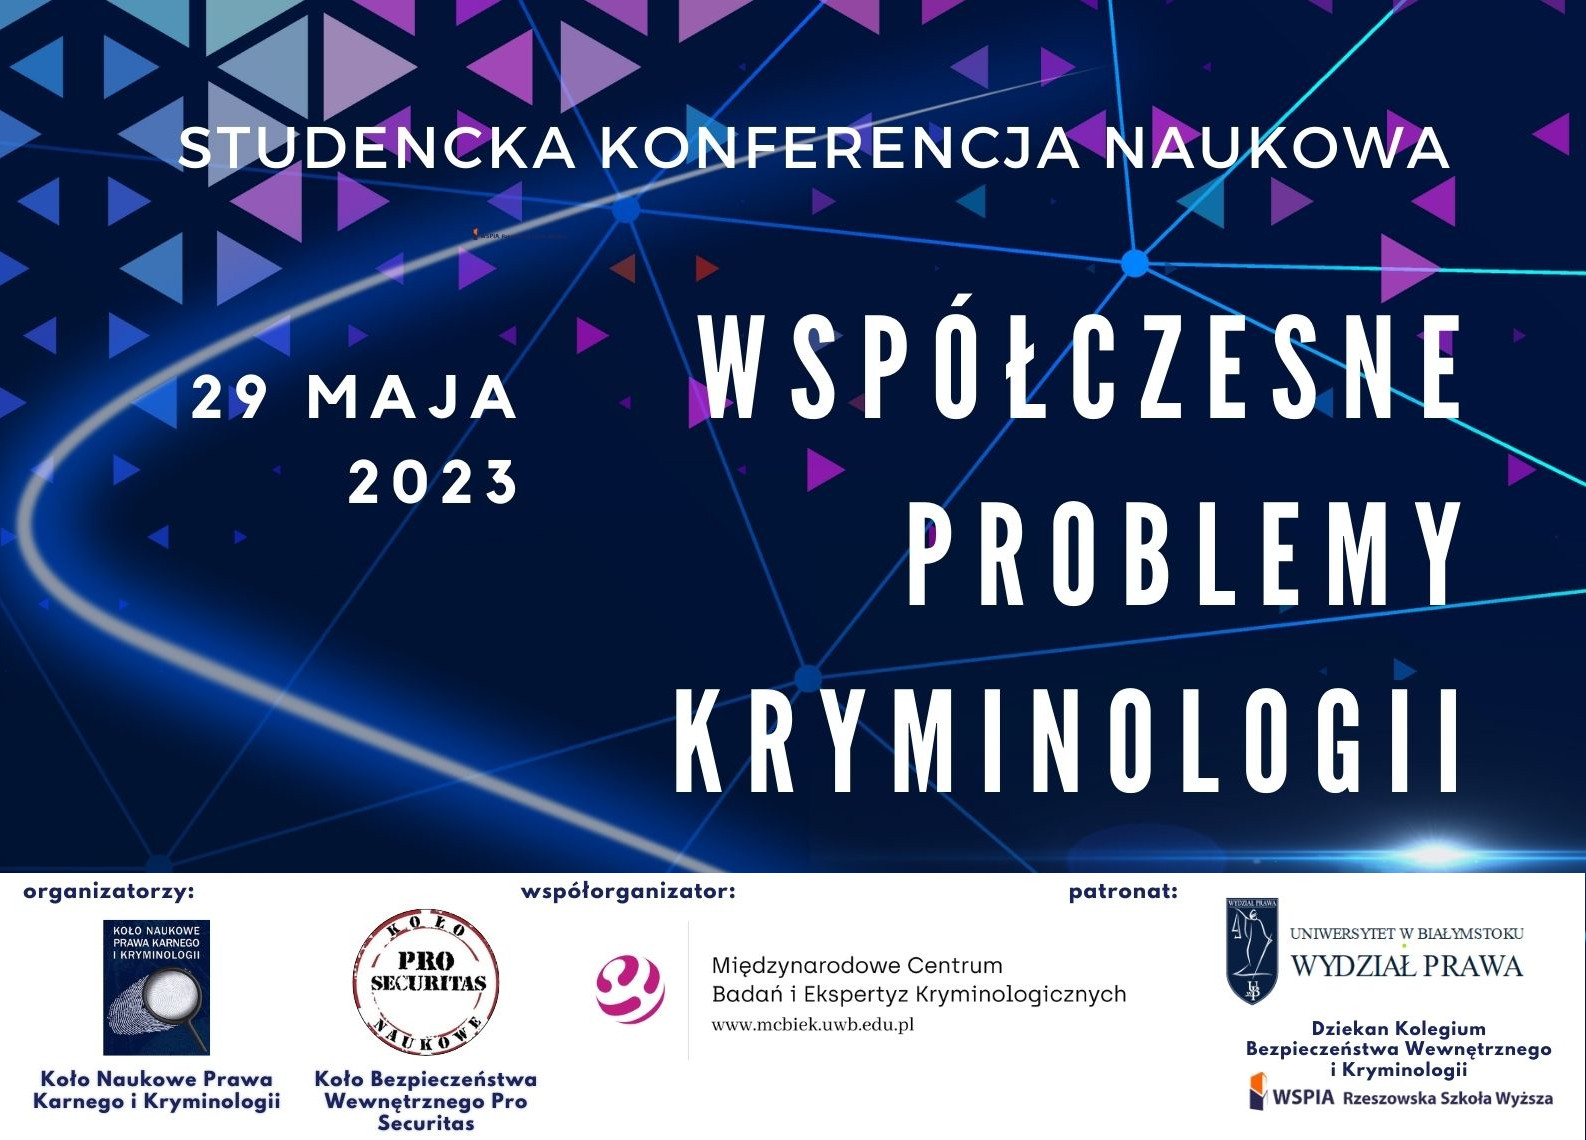 "Сучасні проблеми кримінології" - тема національної дискусії в WSPiA".